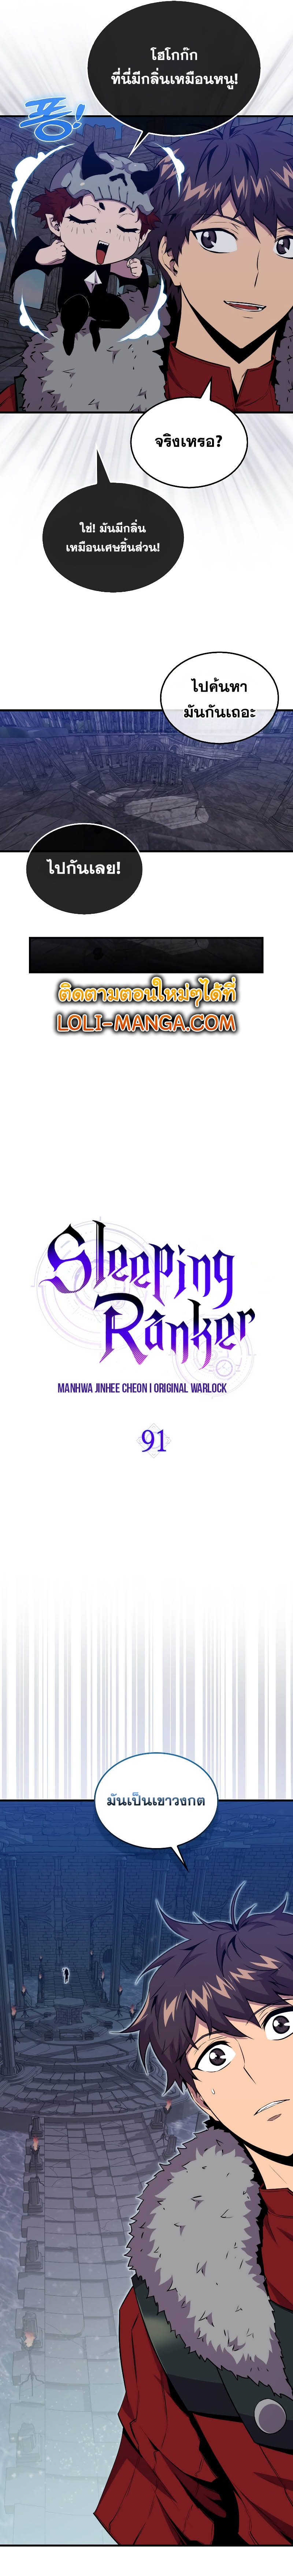 อ่านการ์ตูน Sleeping Ranker 91 ภาพที่ 5